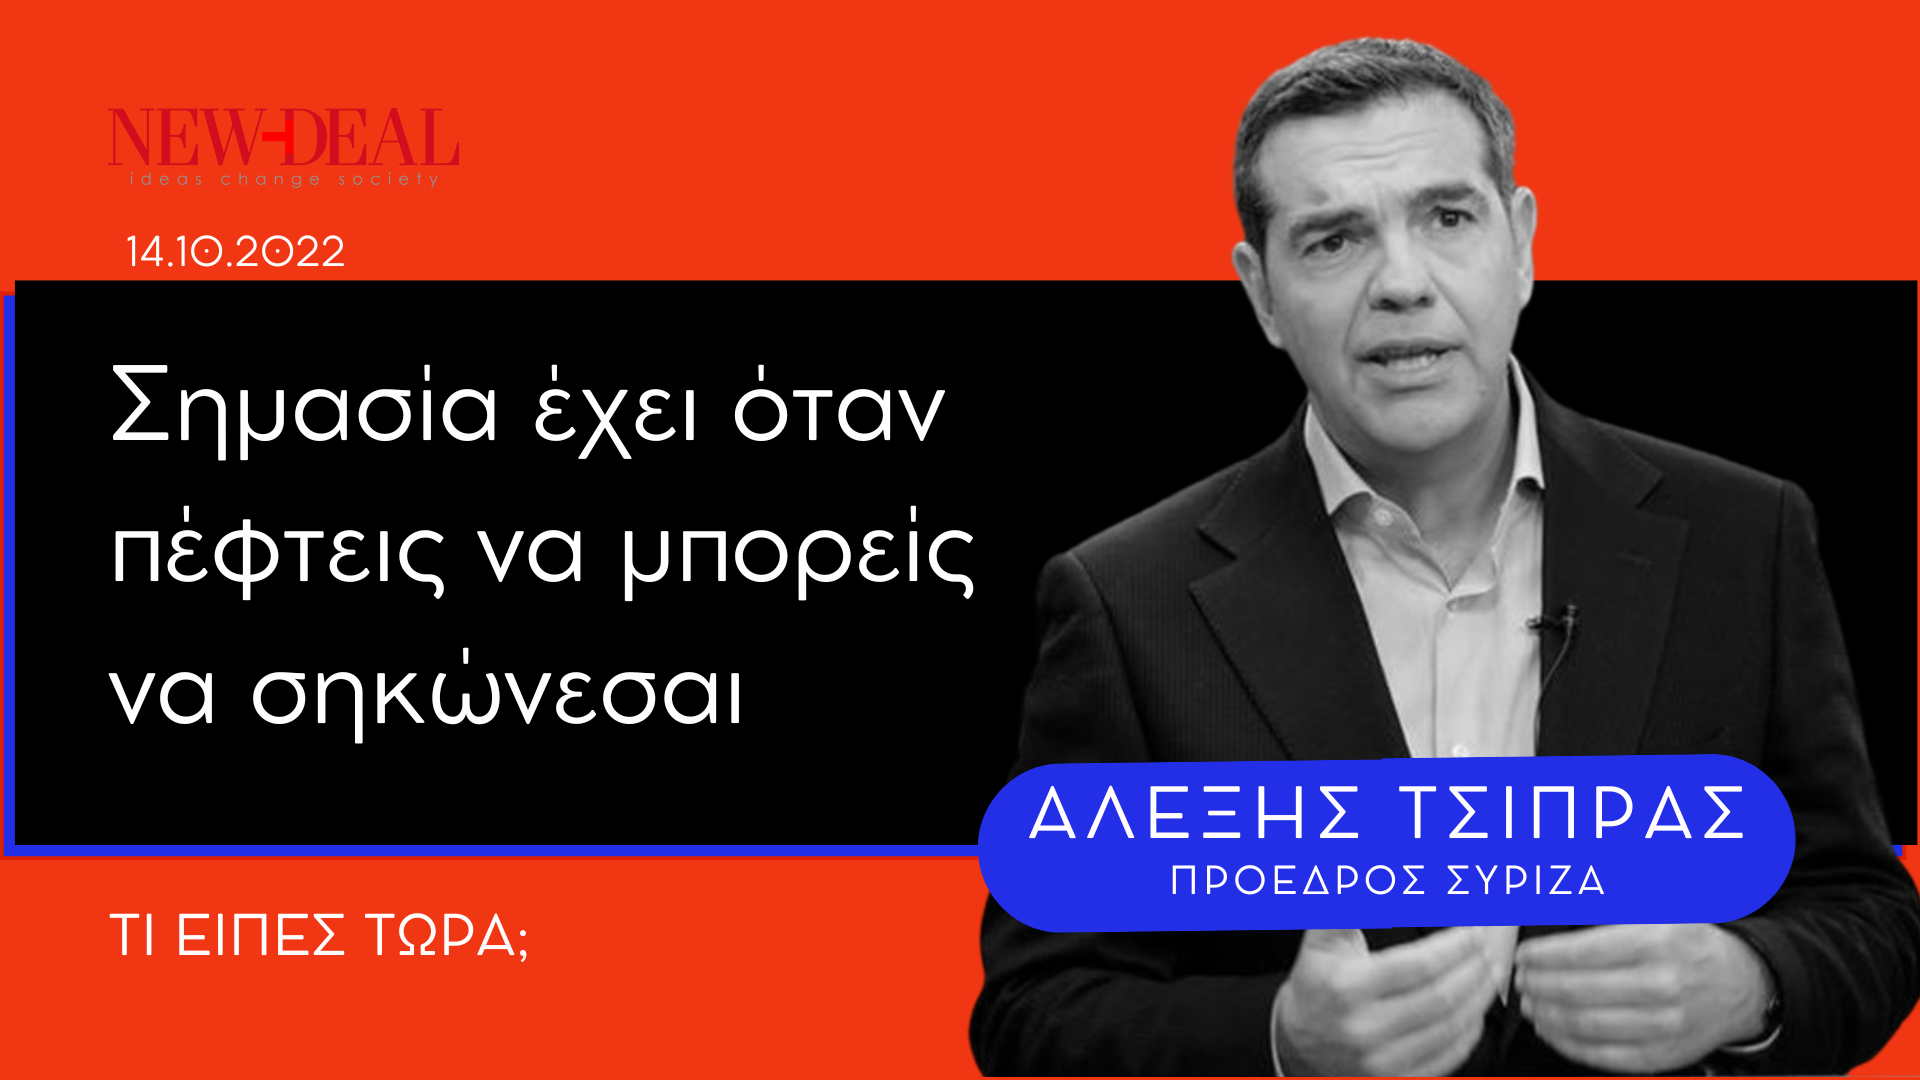 «Σημασία έχει να σηκώνεσαι όταν πέφτεις», σχολίασε ο πρόεδρος του ΣΥΡΙΖΑ, Αλέξης Τσίπρας, ο οποίος λίγο μετά αφότου ανέβηκε στο βήμα, είδε μπροστά του την υφυπουργό Μετανάστευσης, Σοφία Βούλτεψη να σκοντάφτει στα σκαλιά που οδηγούν στα υπουργικά έδρανα της Βουλής και να σωριάζεται κάτω. new deal